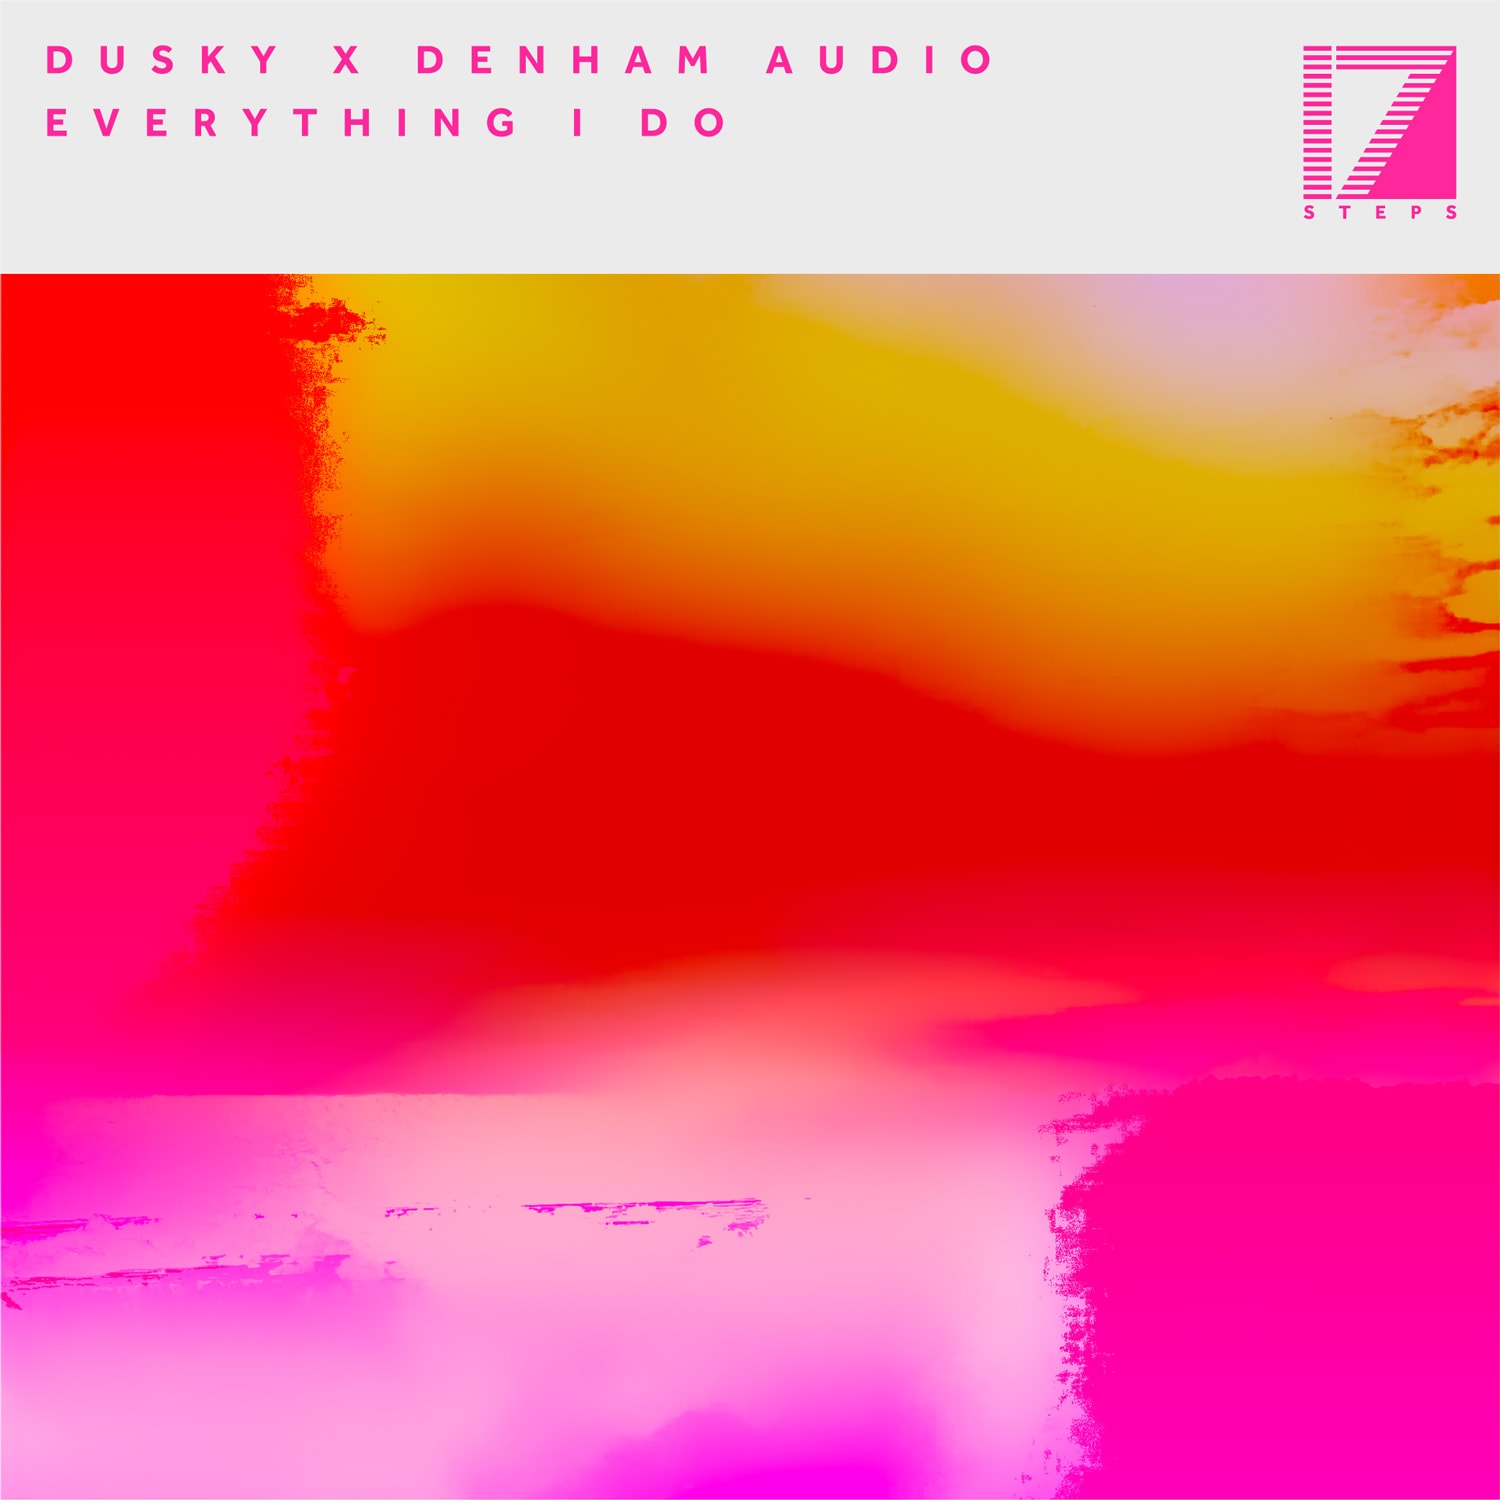 DUSKY X DENHAM AUDIO – EVERYTHING I DO